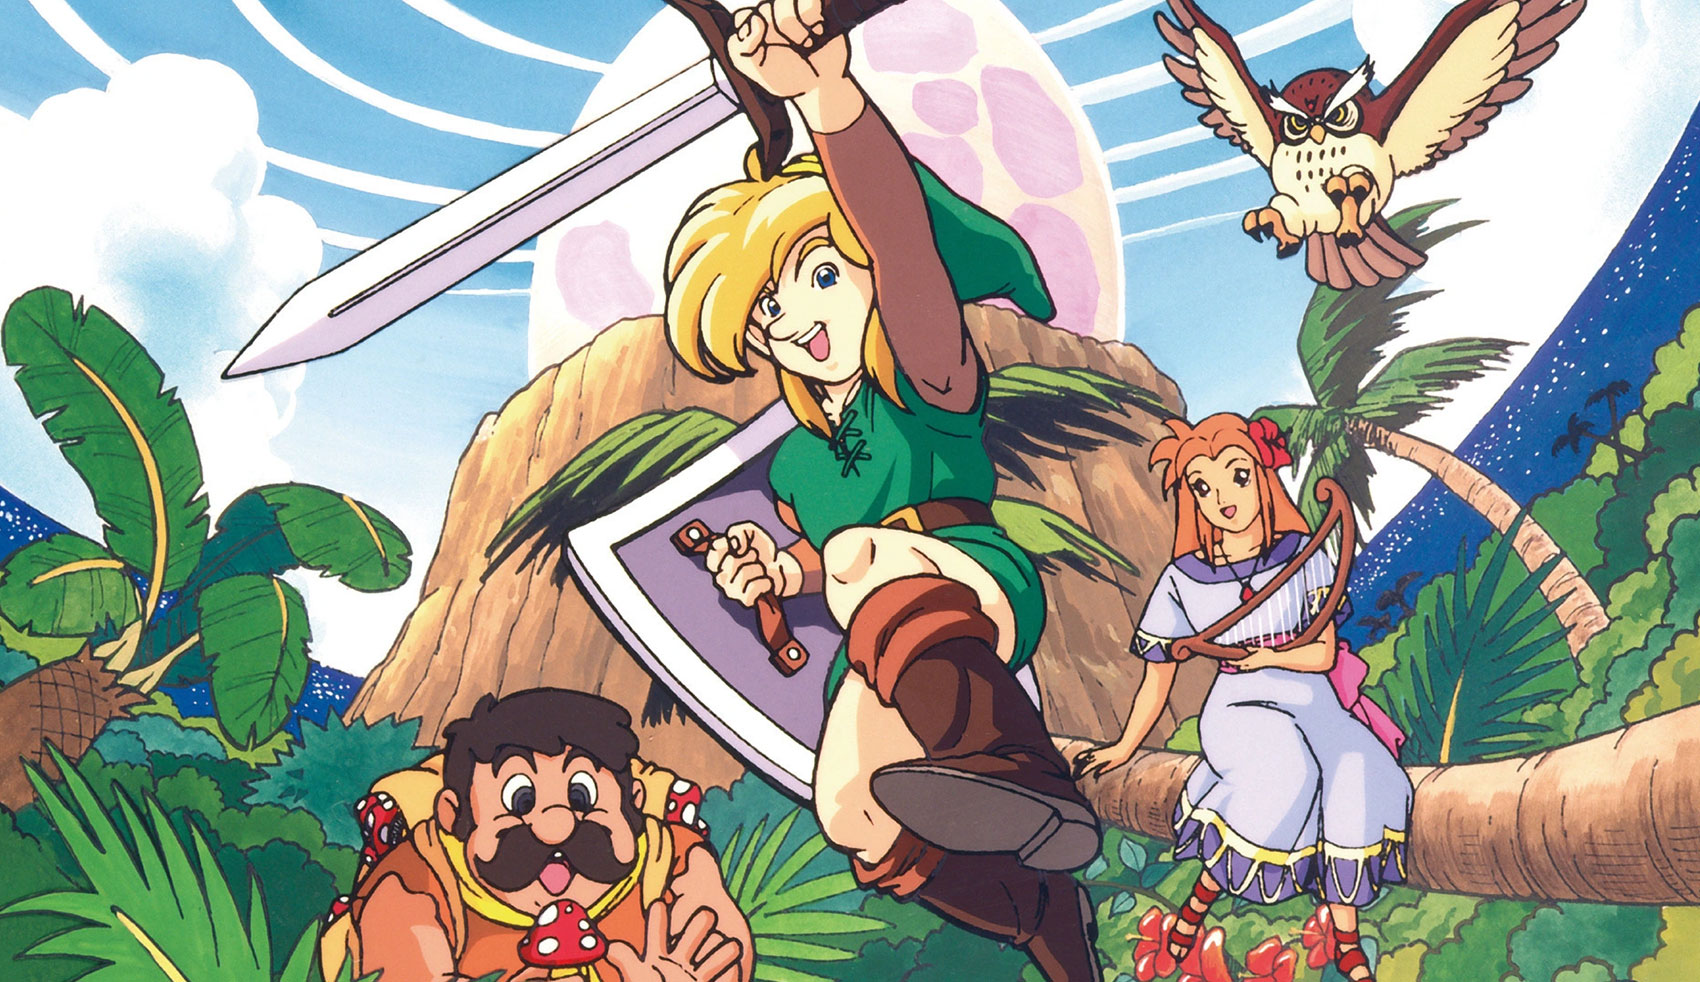 Zelda: detonado incrível de Link's Awakening é disponibilizado na Internet